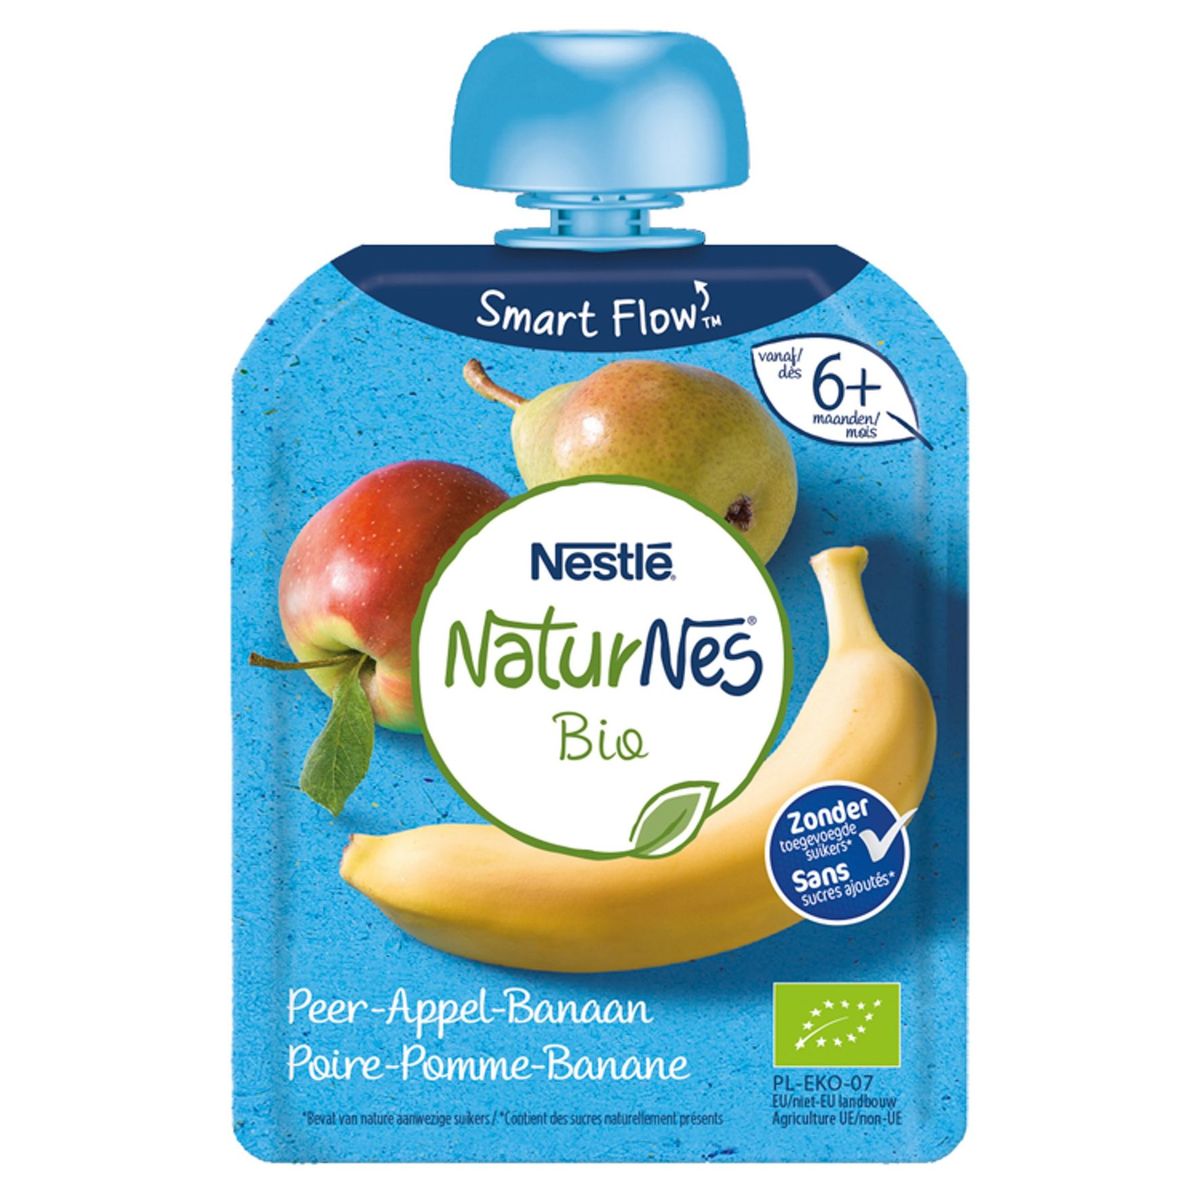 Nestlé NaturNes Bio Poire-Pomme-Banane dès 6 Mois 90 g